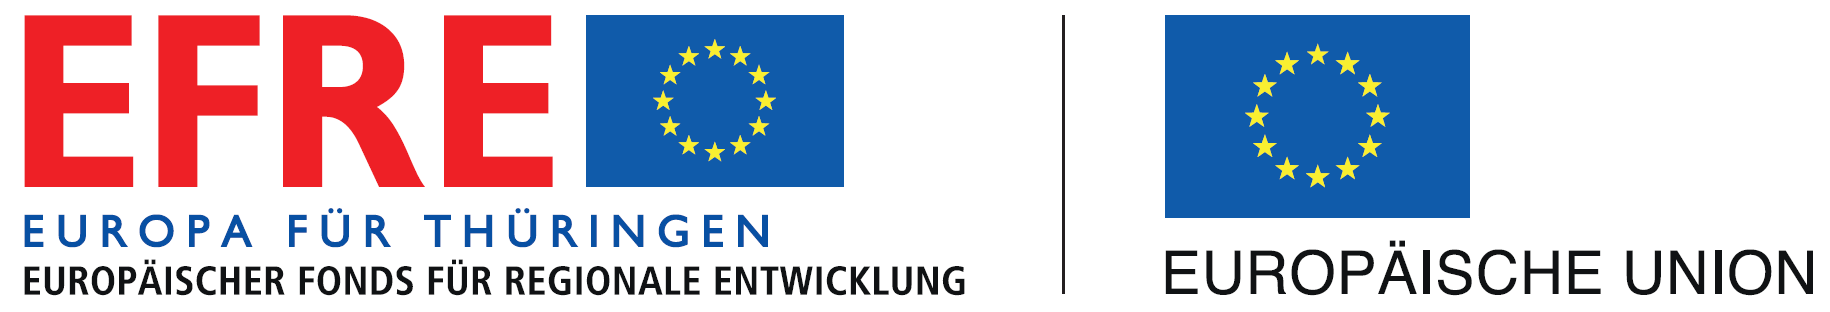 Logo EFRE Fonds Thüringen Europäische Union